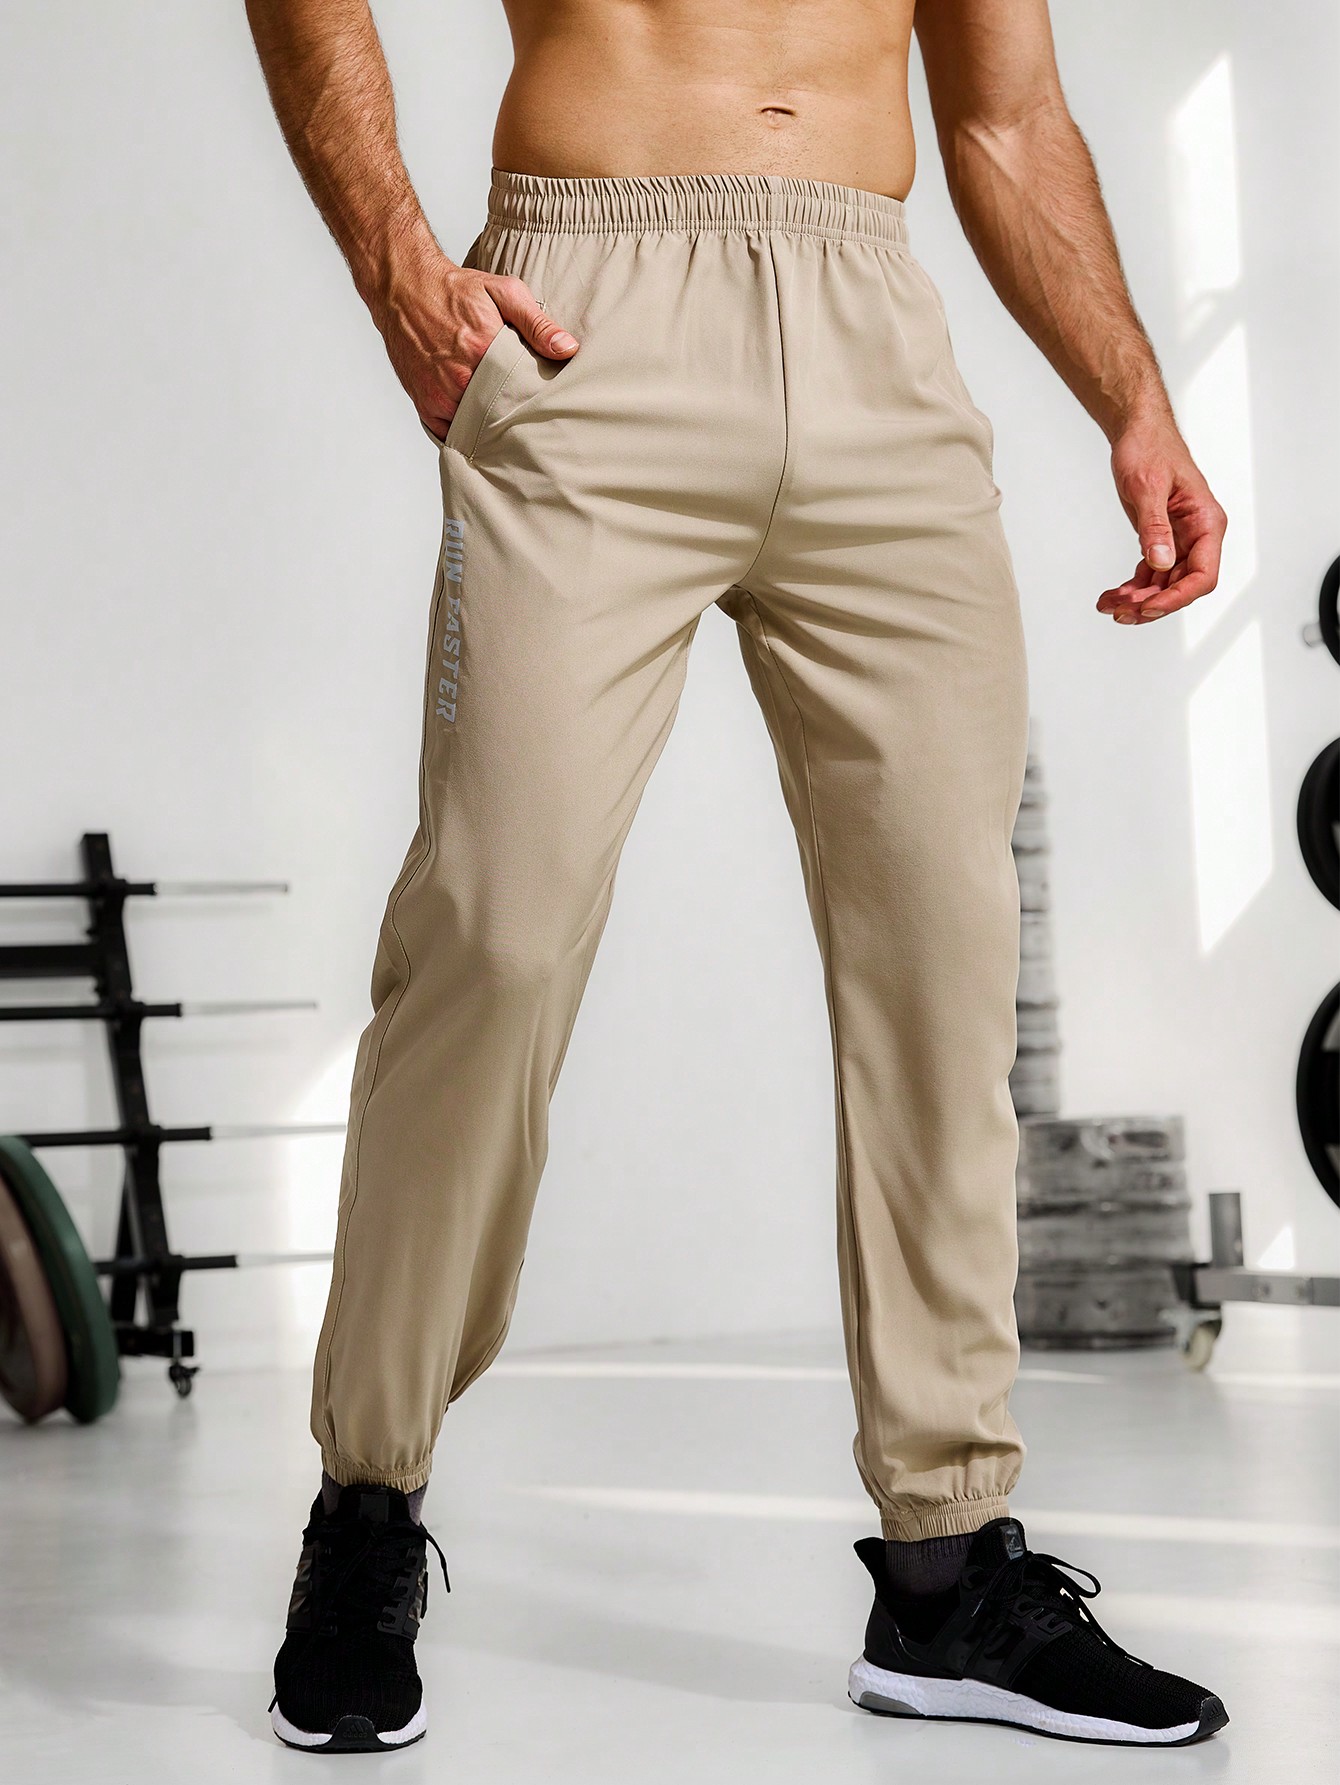 Мужские спортивные спортивные штаны с эластичной резинкой на талии и манжетами, кофейный коричневый фото